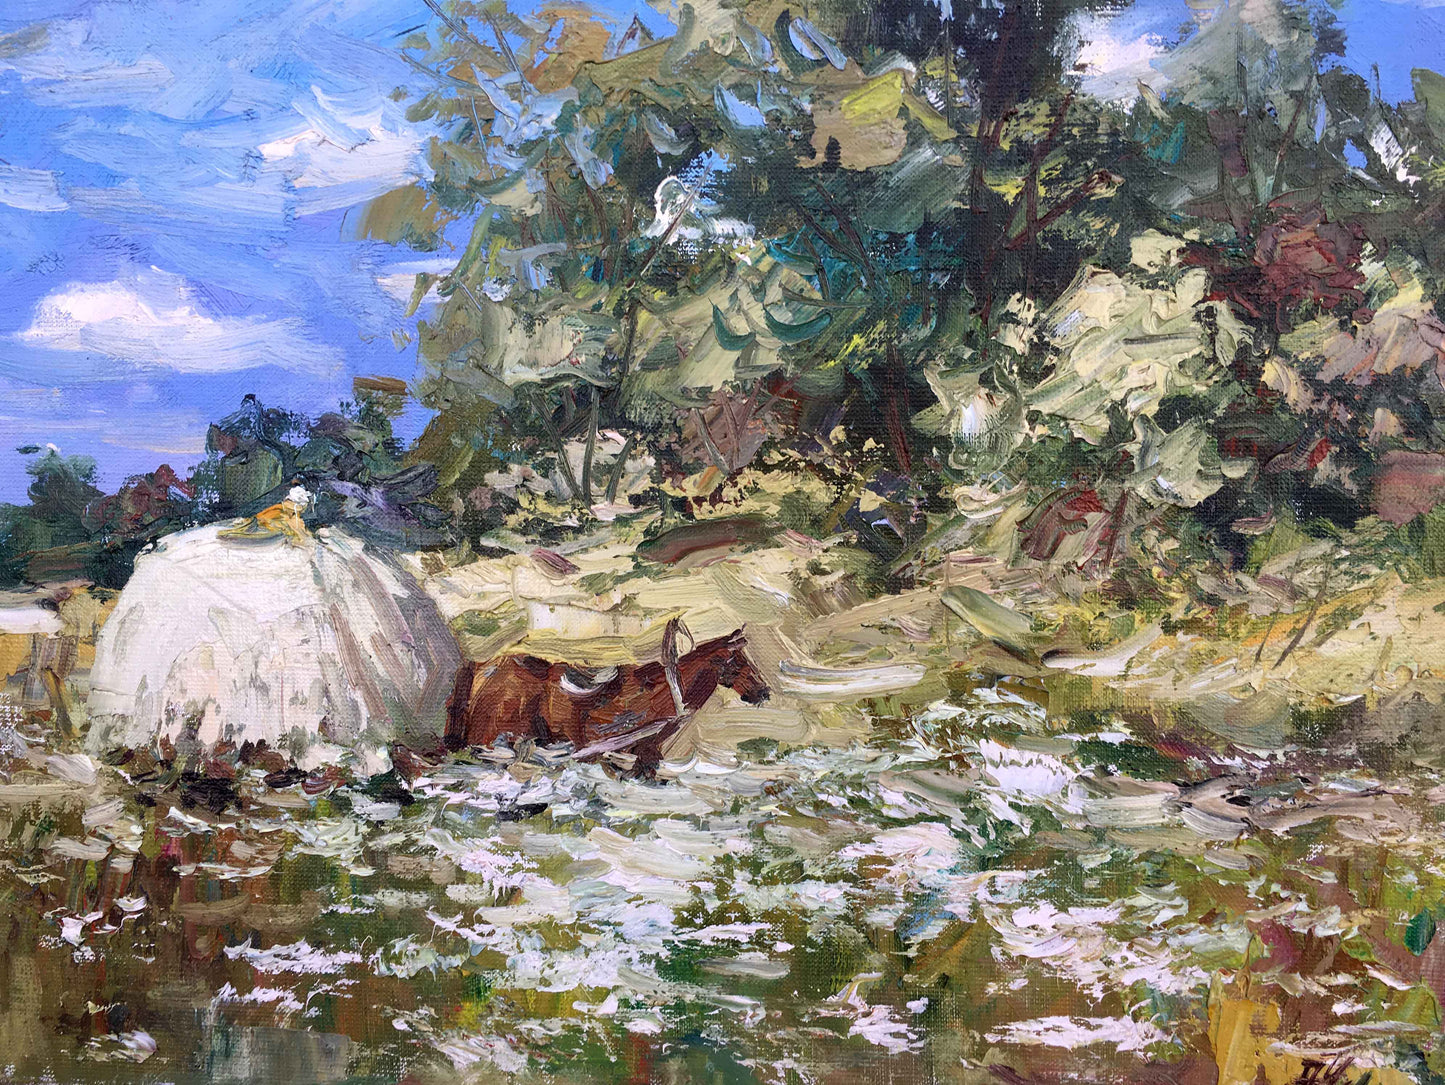 Oil painting rural concerns Alexander Nikolayevich Cherednichenko